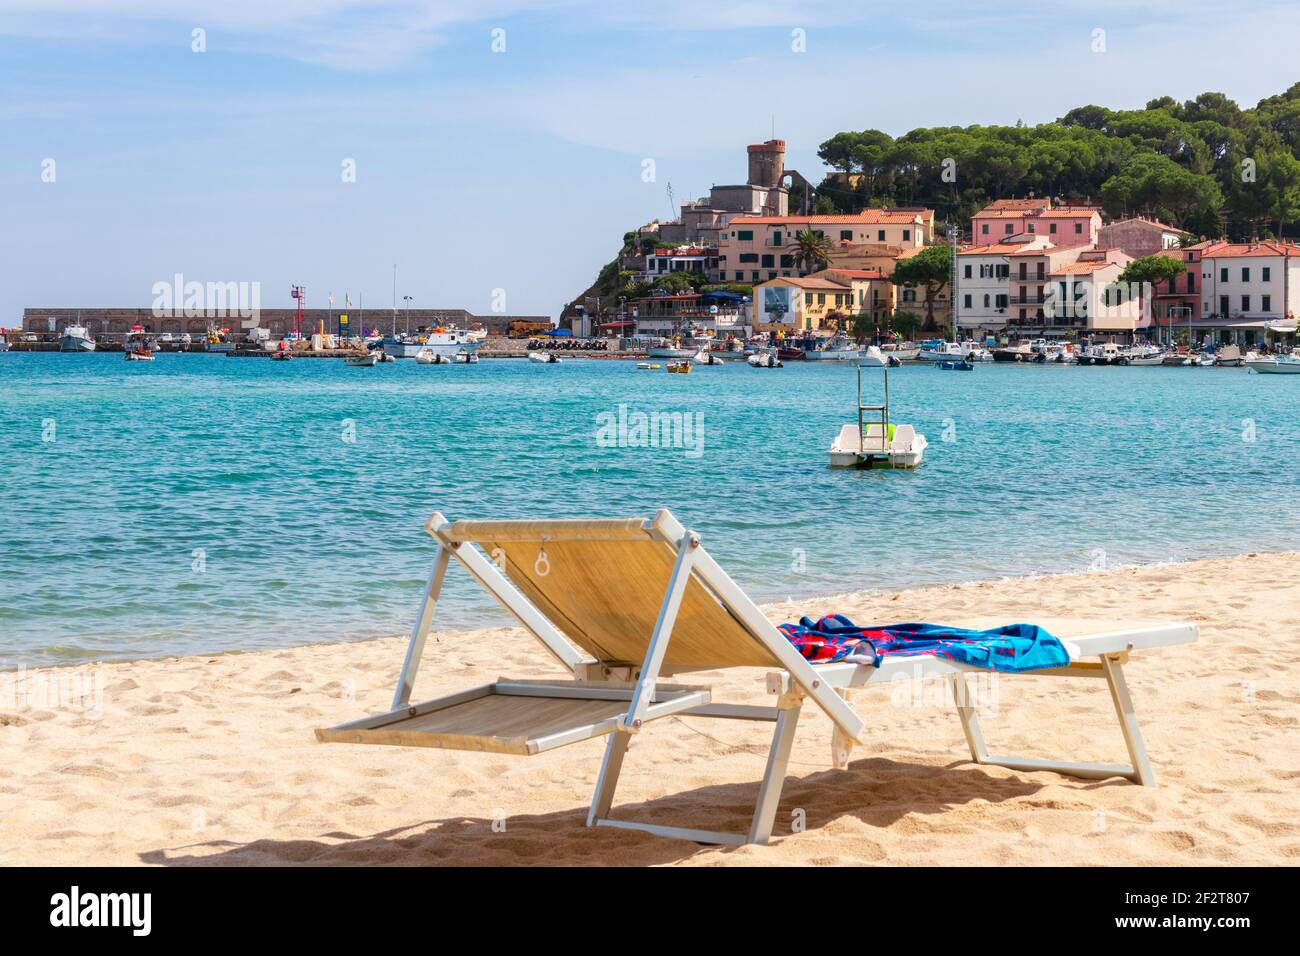 MARINA DI CAMPO, ISOLA ELBA, ITALIEN - 16. SEPTEMBER 2018: Strand der Stadt Marina di Campo Ende Smaragdmeer der Insel Elba. Toskana, Italien. Stockfoto